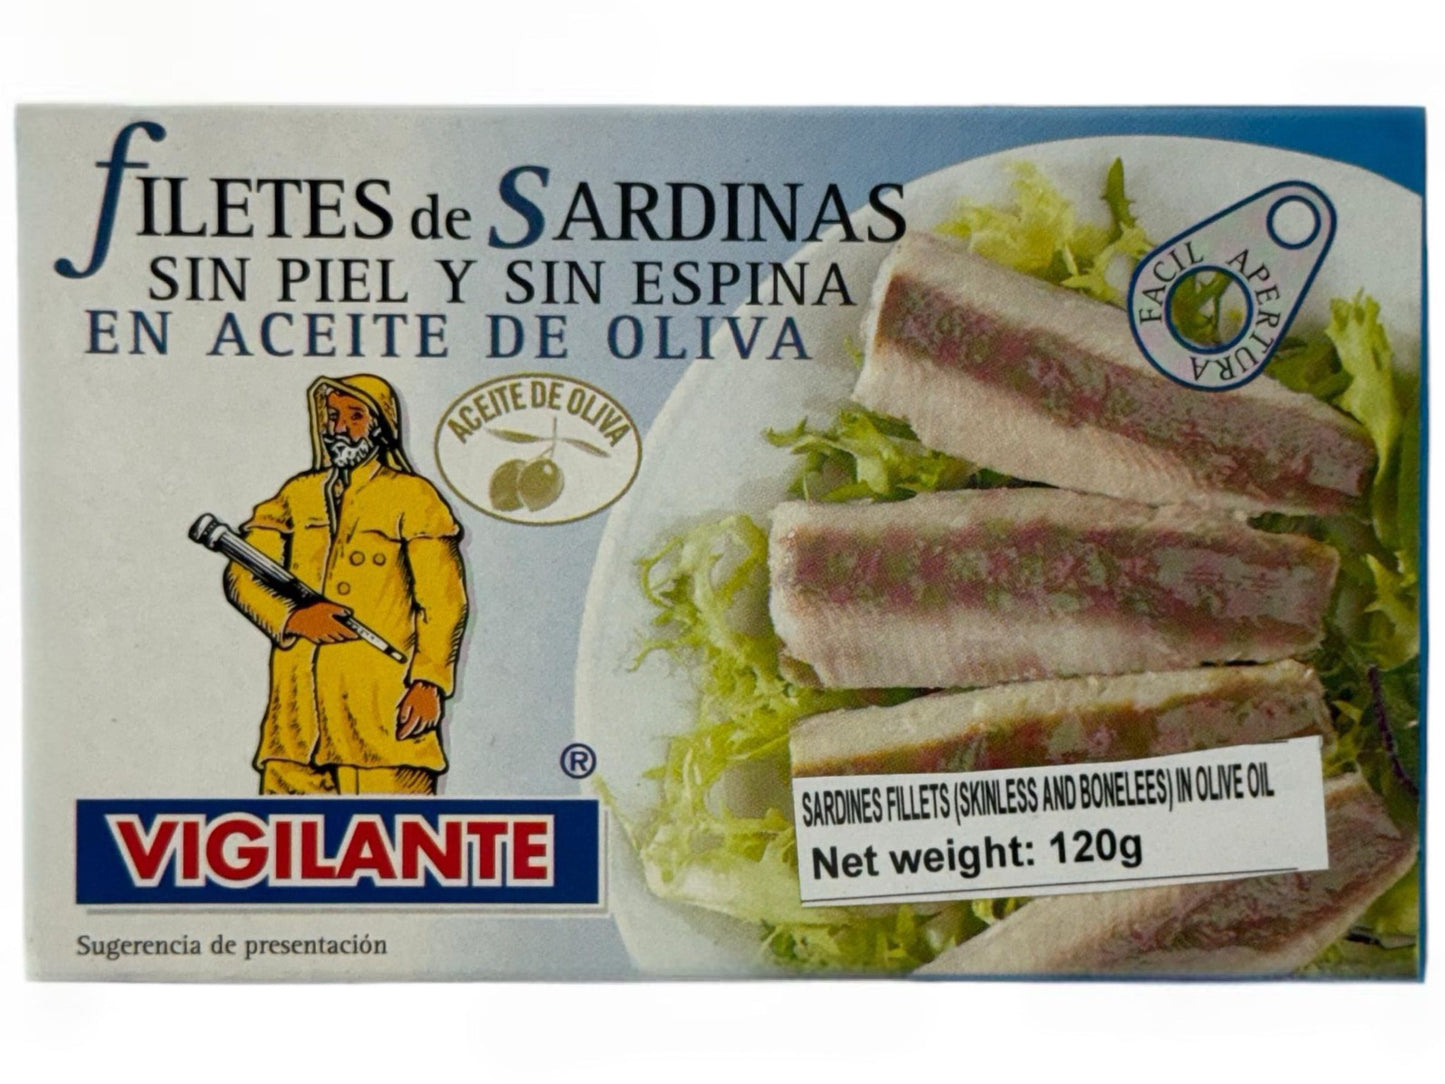 Vigilante Filetes de Sardinas sin Piel y sin Espina en Aceite de Oliva - Sardine Fillets (Skinless and Boneless) in Olive Oil 120g